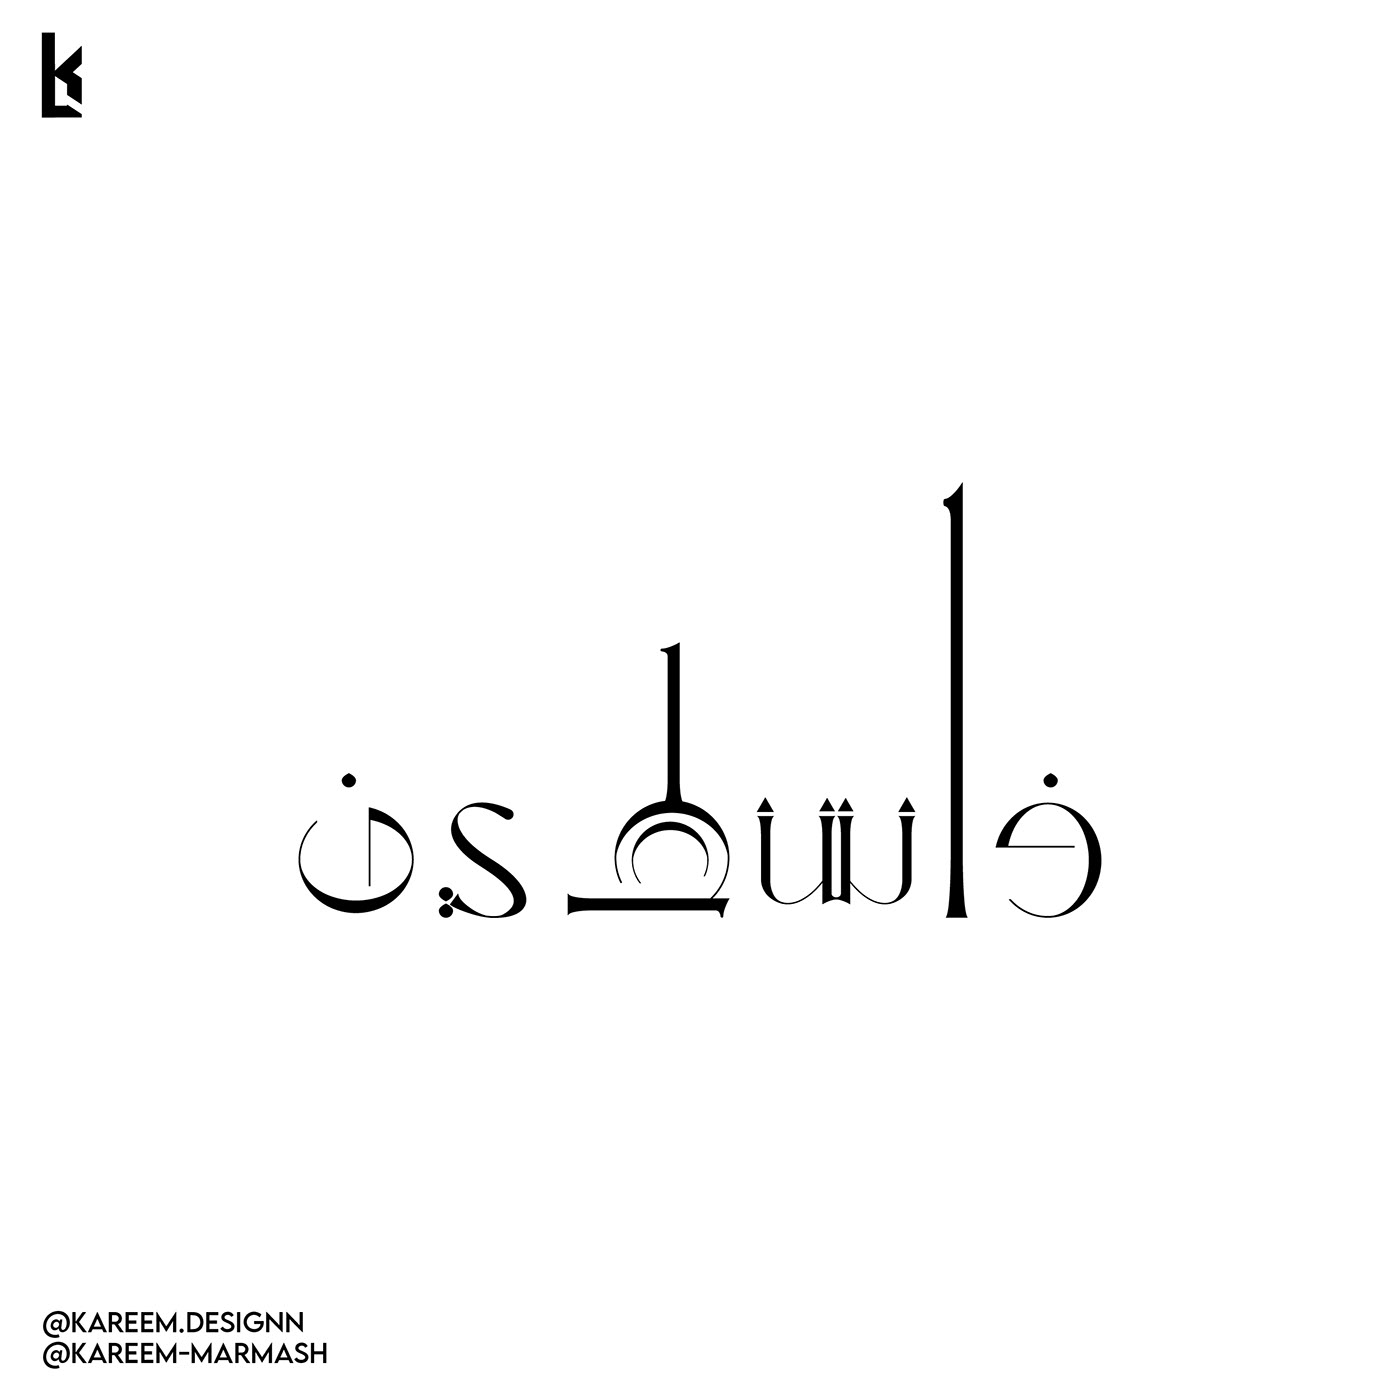 فلسطين القدس غزة jerusalem gaza palestine arabic typography   brand identity